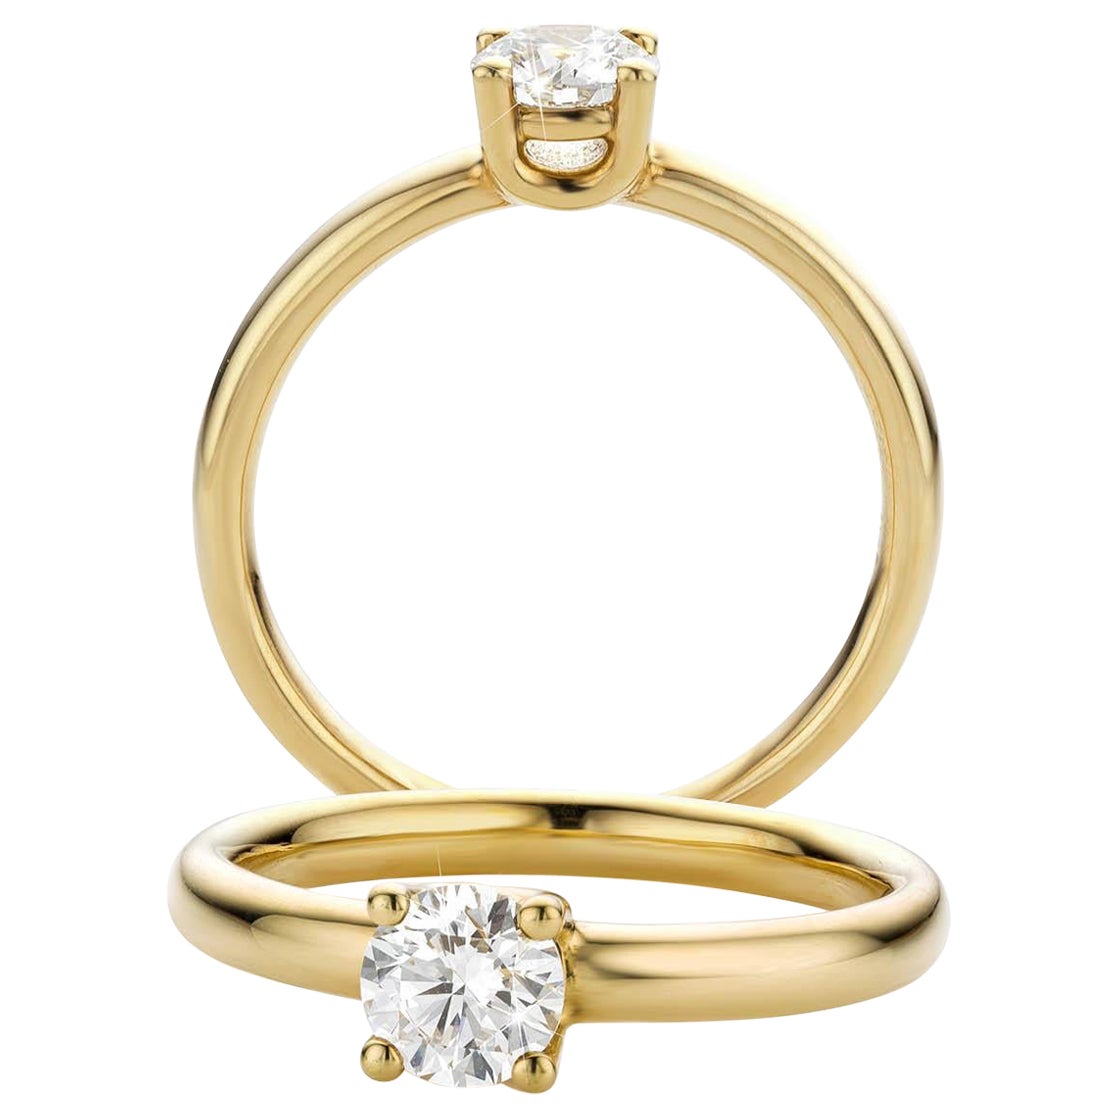 Bague en or jaune Classic Brilliante avec un diamant de 0,50 ct. Diamant taillé en brillant